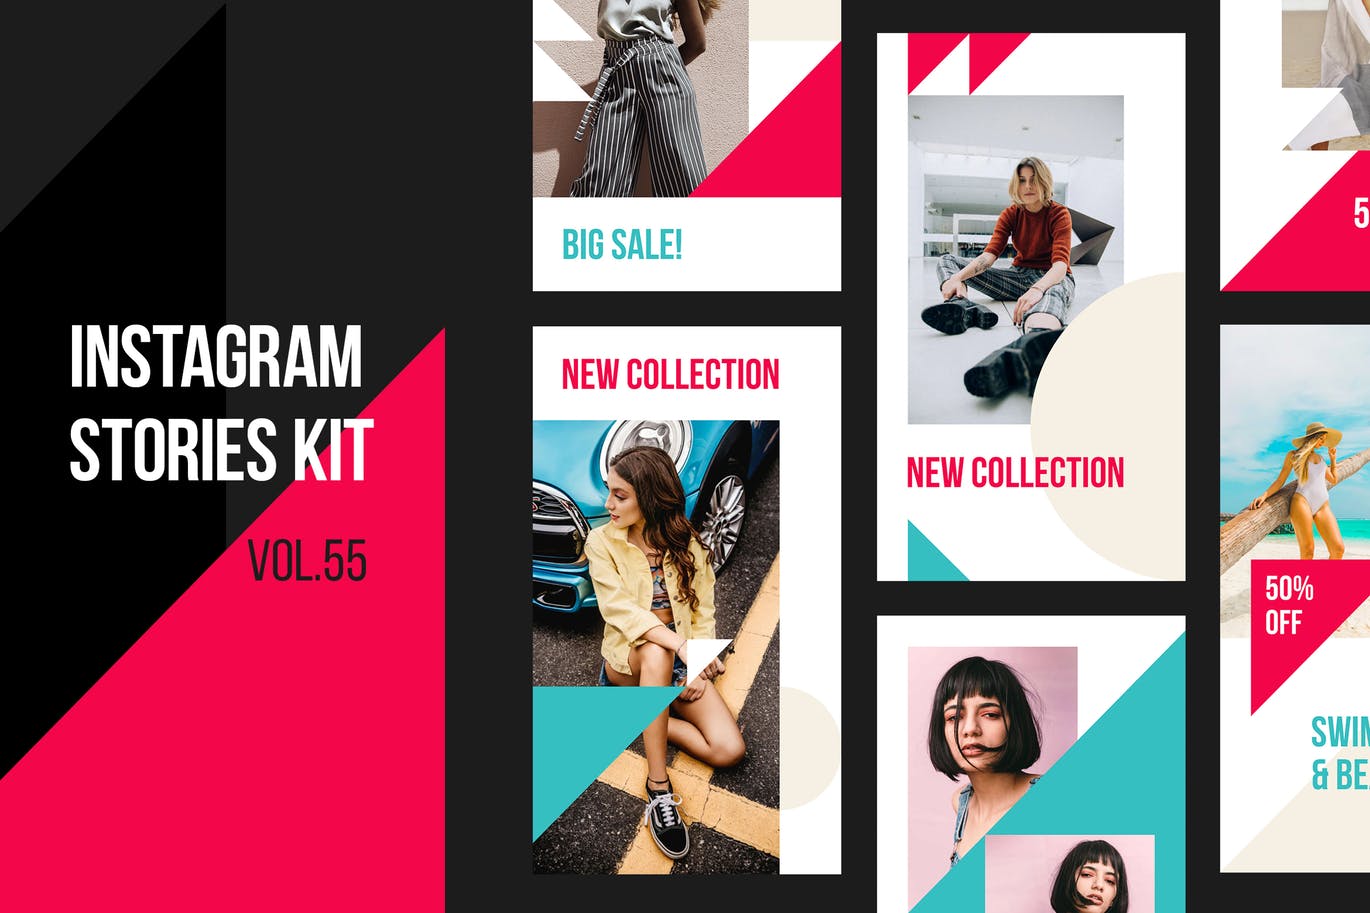 夏季新品服装服饰促销推广Instagram社交素材包 Instagram Stories Kit (Vol.55)设计素材模板